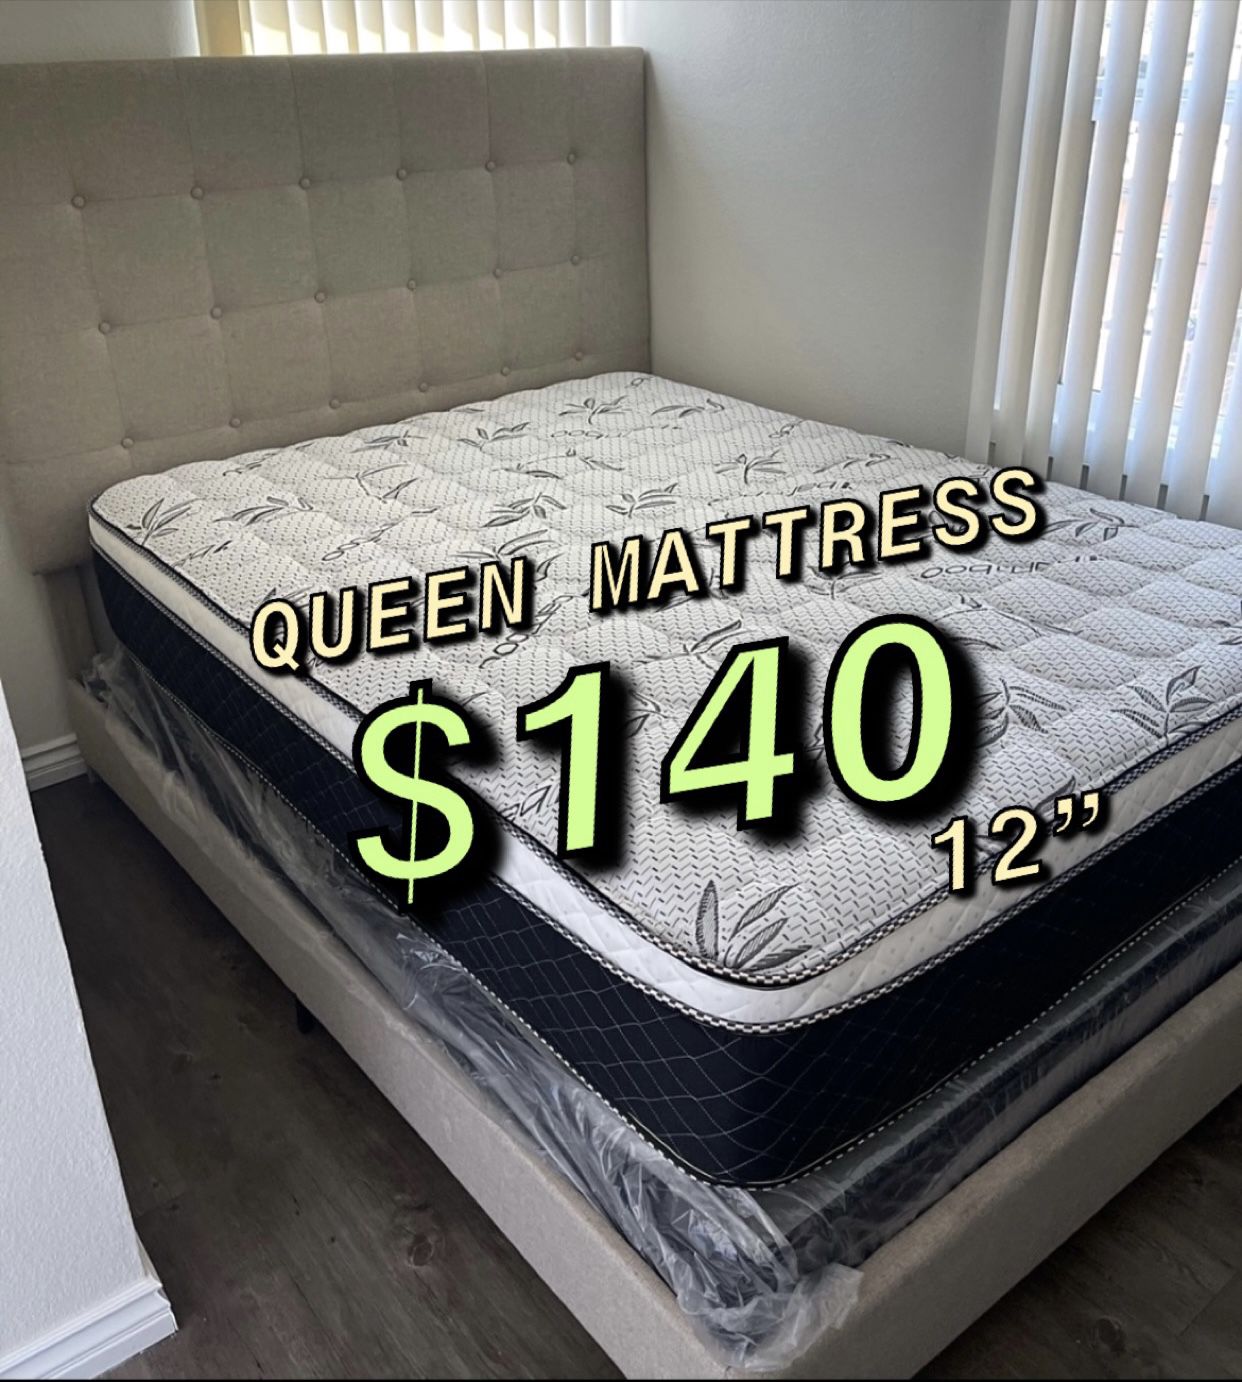 New Queen Mattress For $140